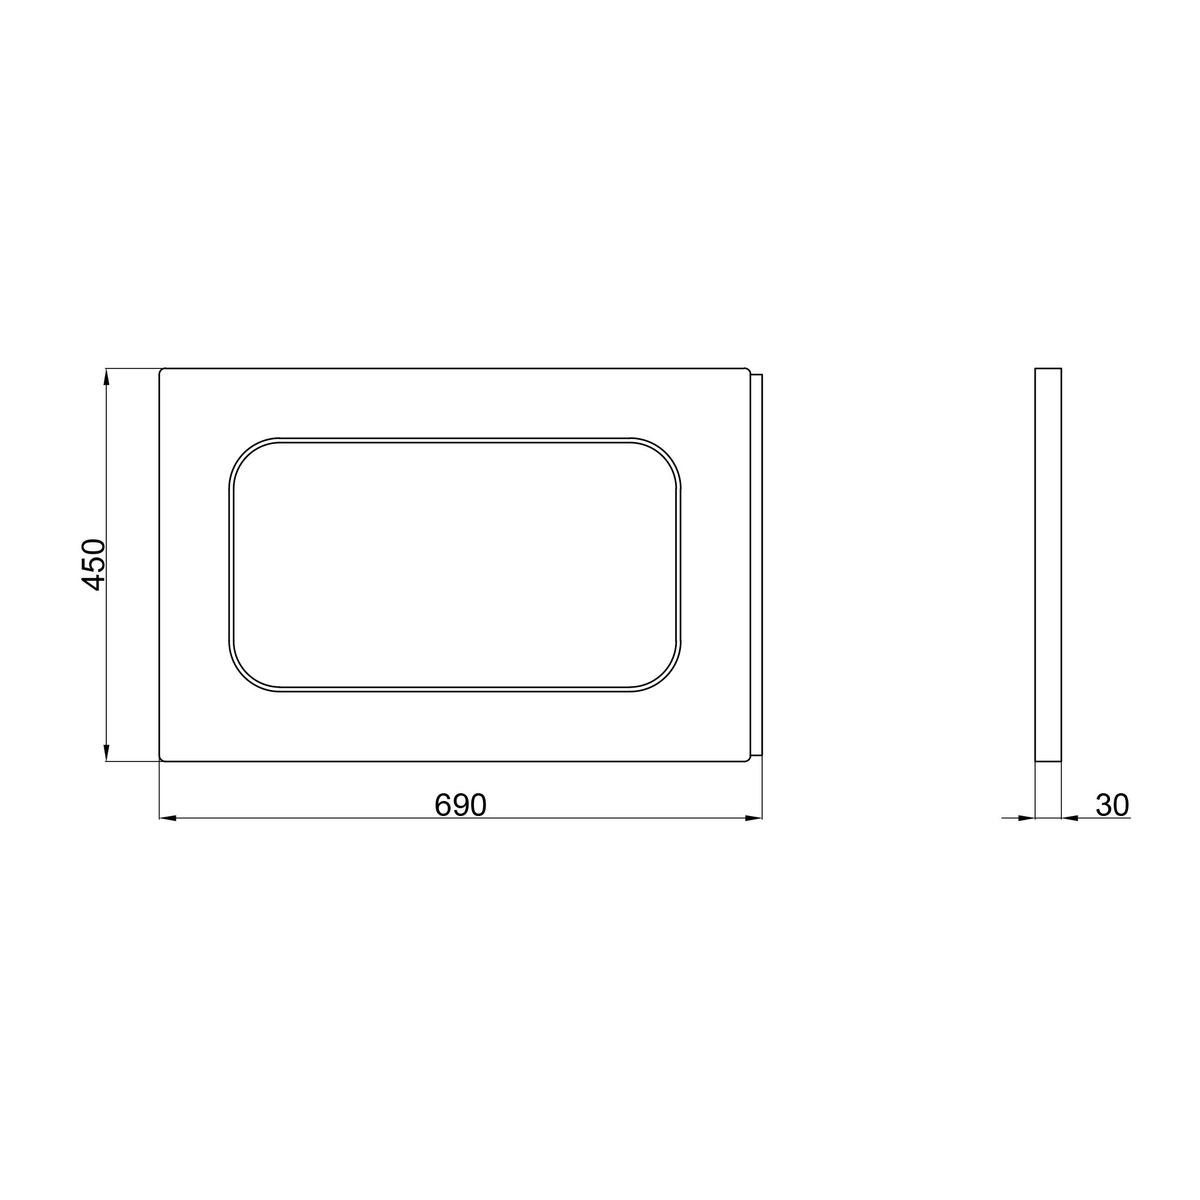 Панель для ванны белая акриловая LIDZ PANEL R 690x450мм LPR70